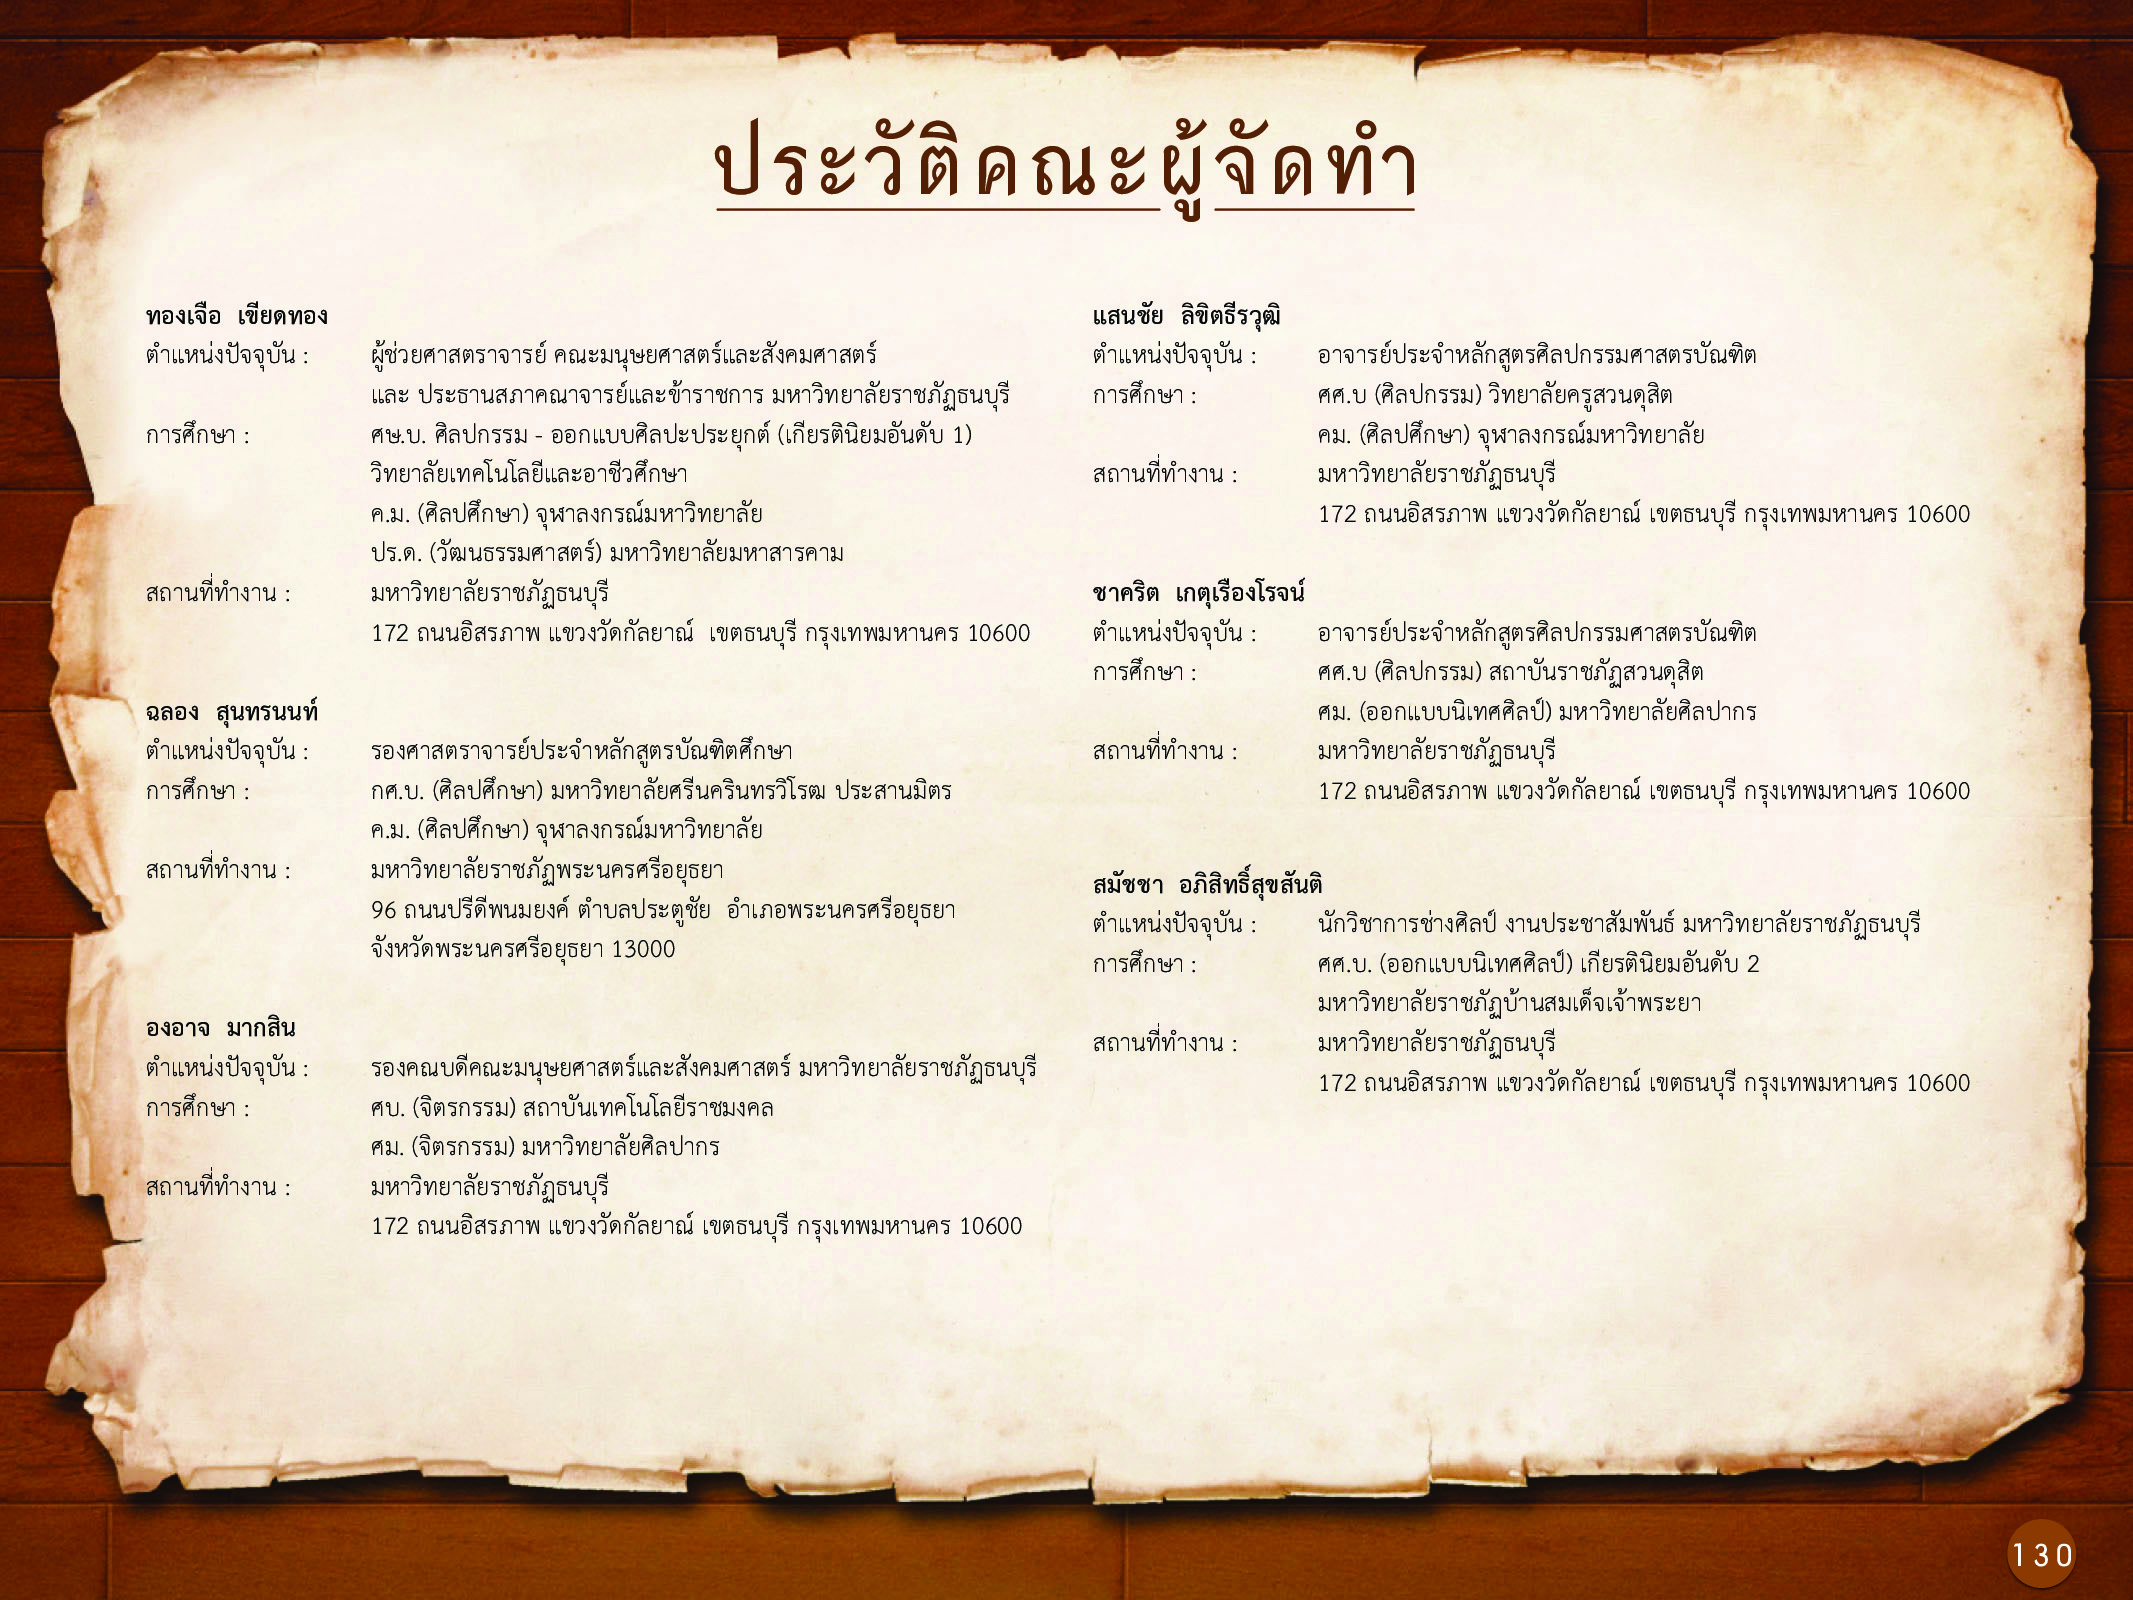 ประวัติศาสตร์กรุงธนบุรี ./images/history_dhonburi/130.jpg